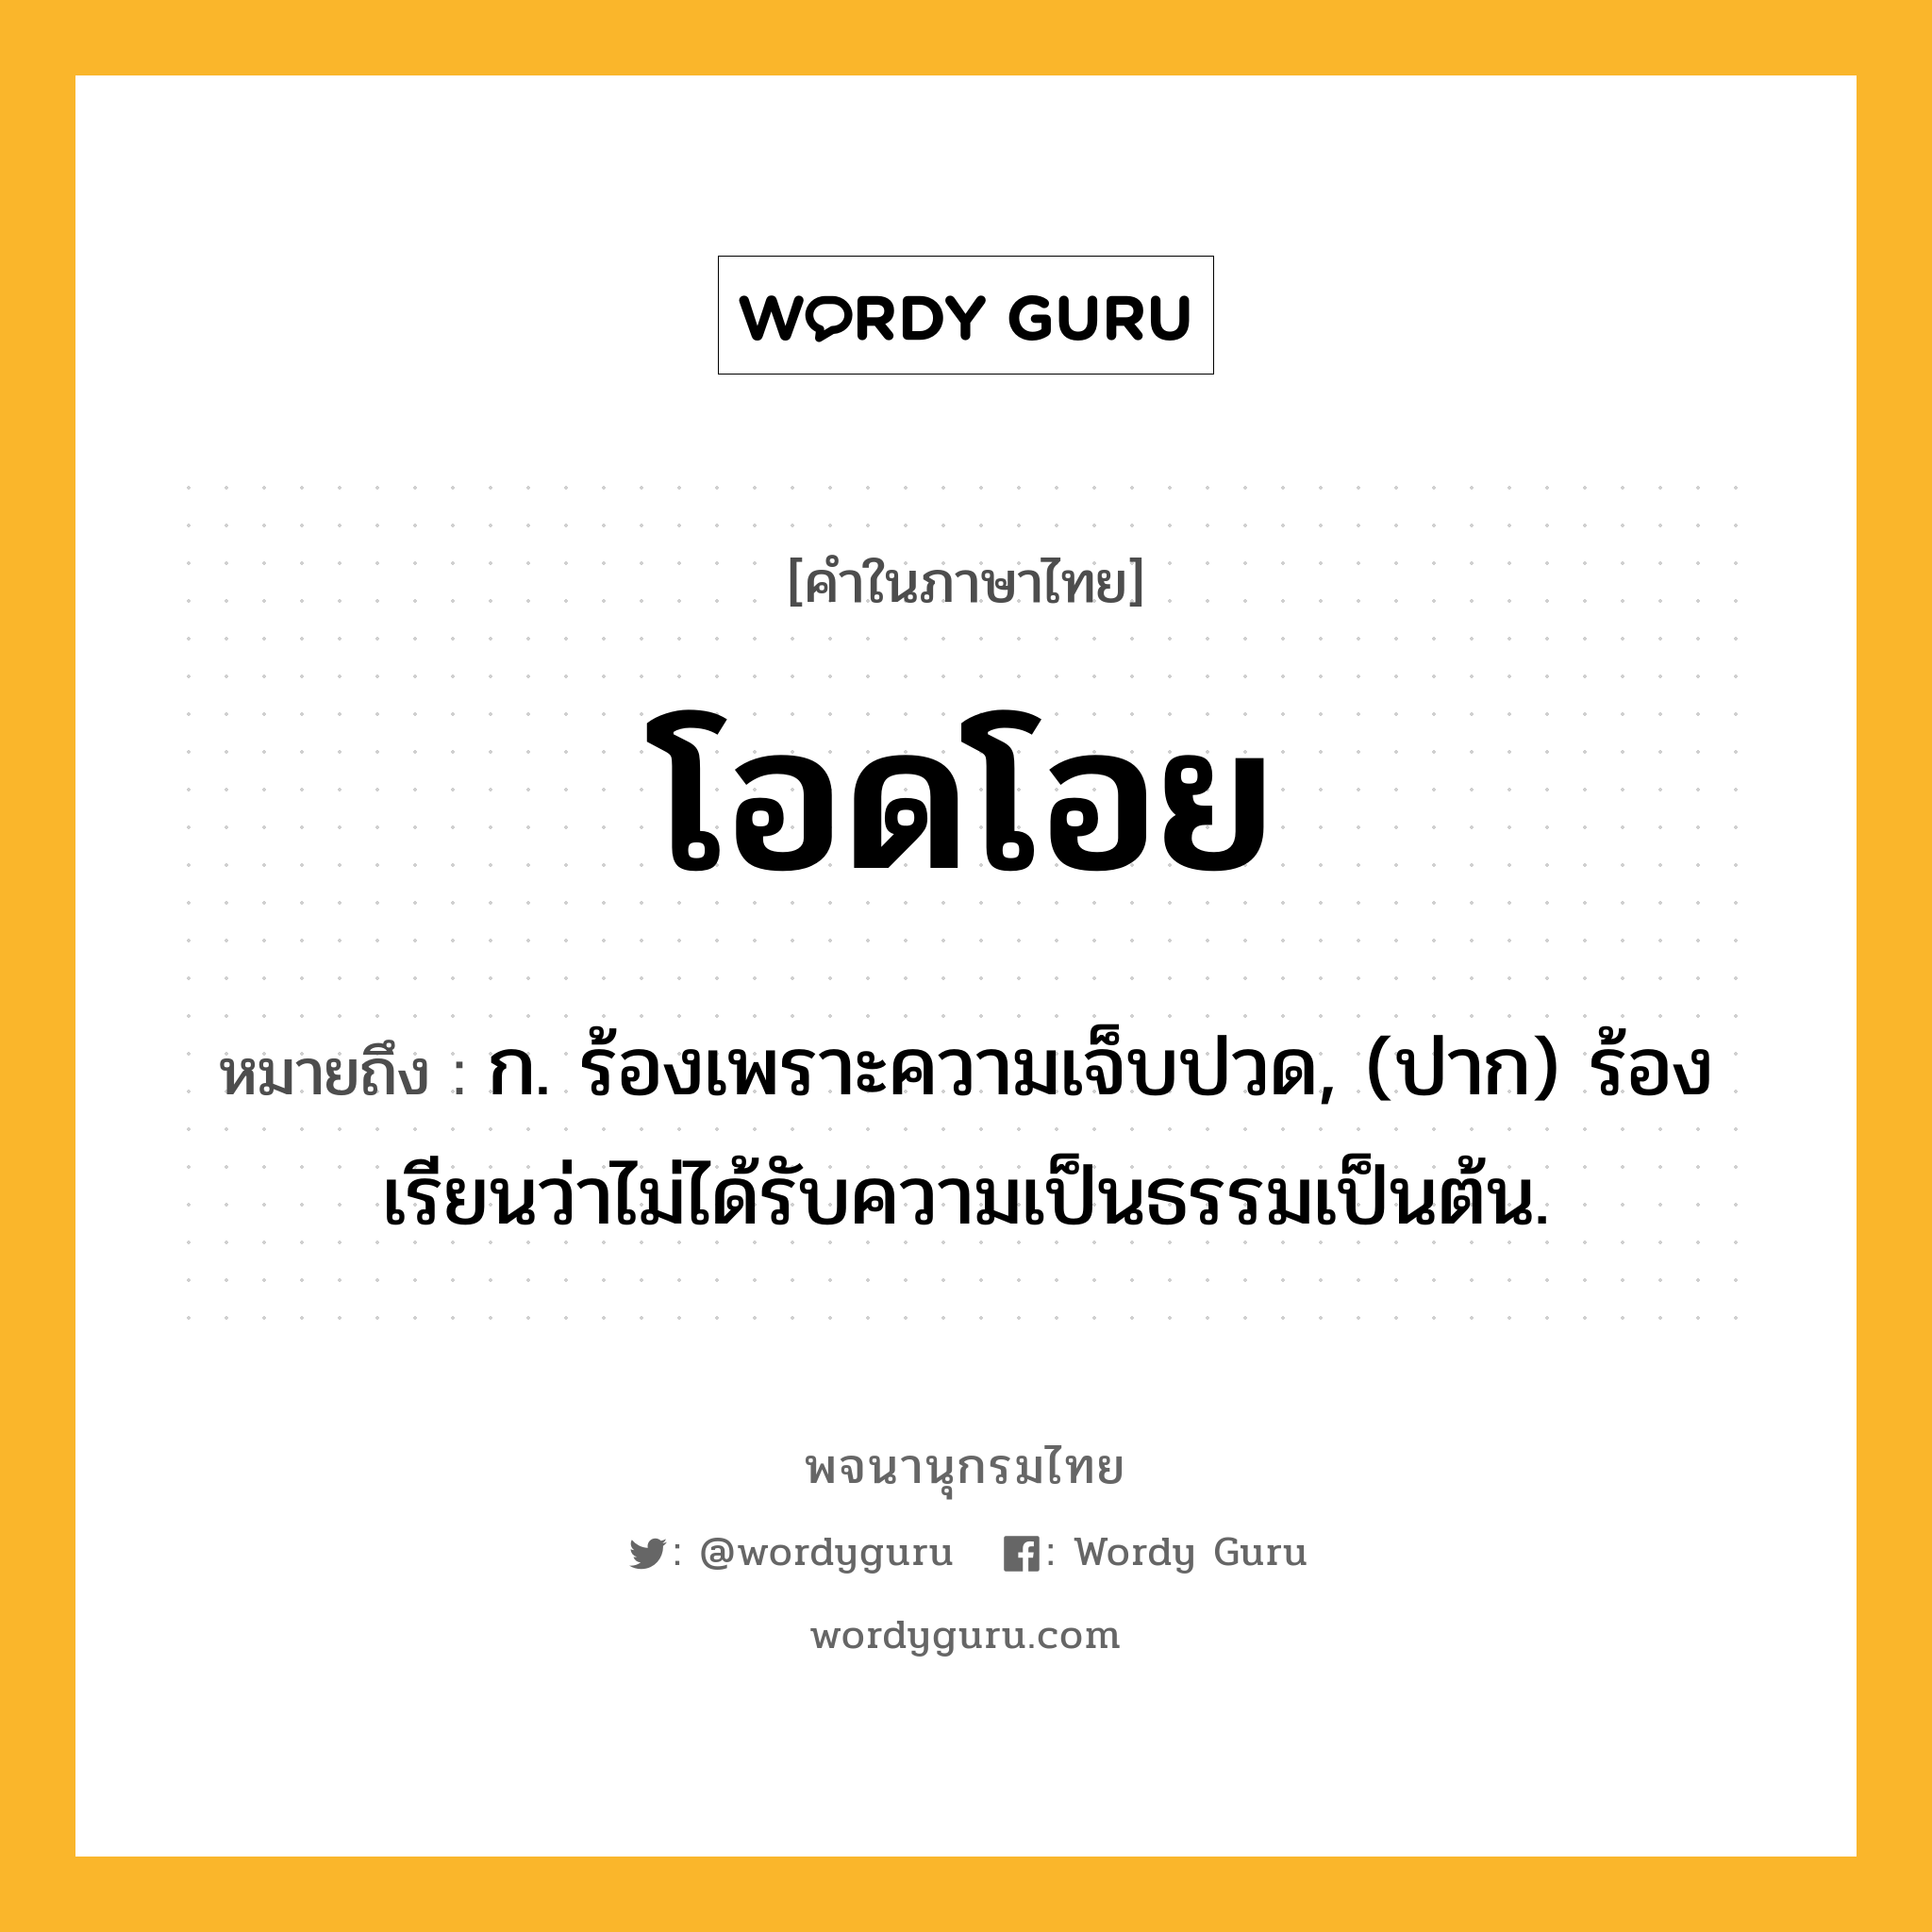 โอดโอย หมายถึงอะไร?, คำในภาษาไทย โอดโอย หมายถึง ก. ร้องเพราะความเจ็บปวด, (ปาก) ร้องเรียนว่าไม่ได้รับความเป็นธรรมเป็นต้น.